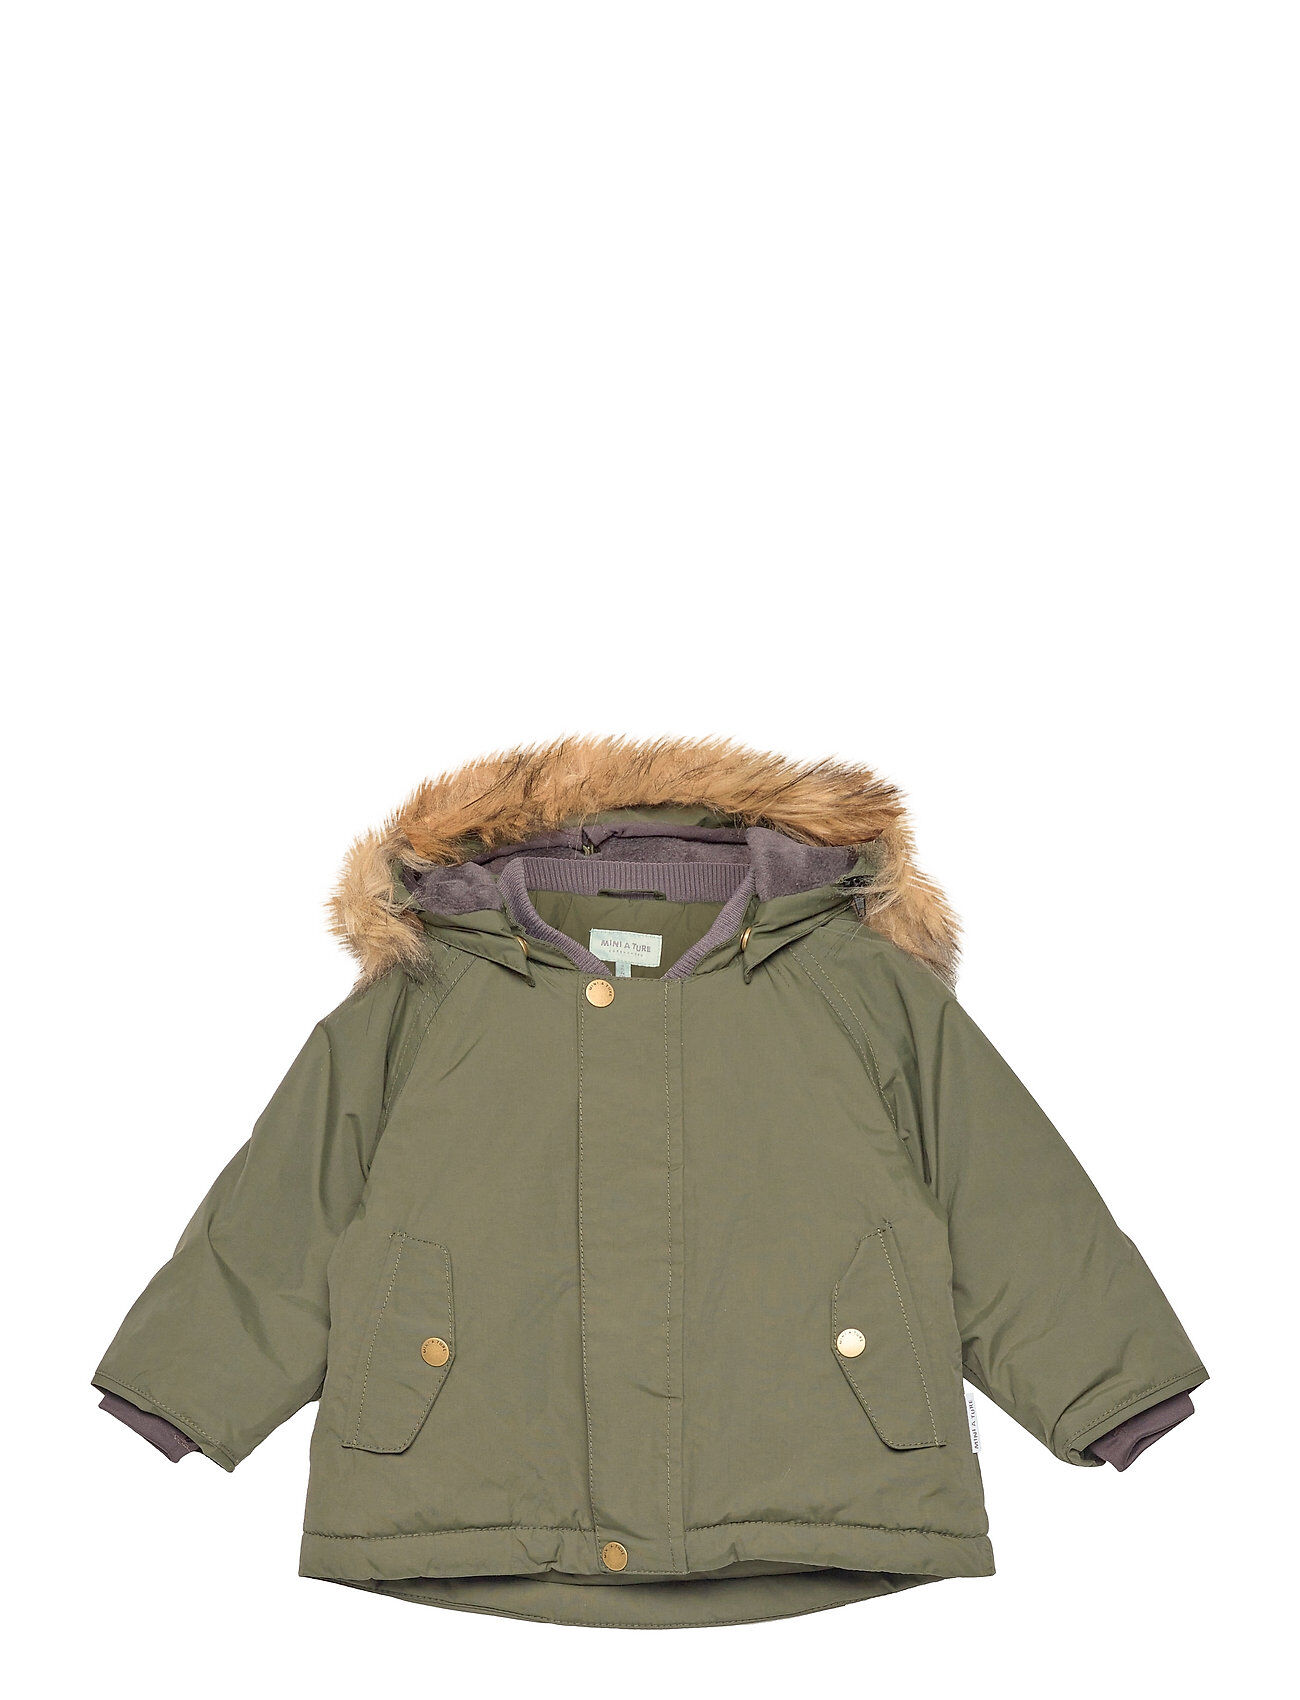 Mini A Ture Wally Fake Fur Jacket, M Outerwear Snow/ski Clothing Snow/ski Jacket Grønn Mini A Ture